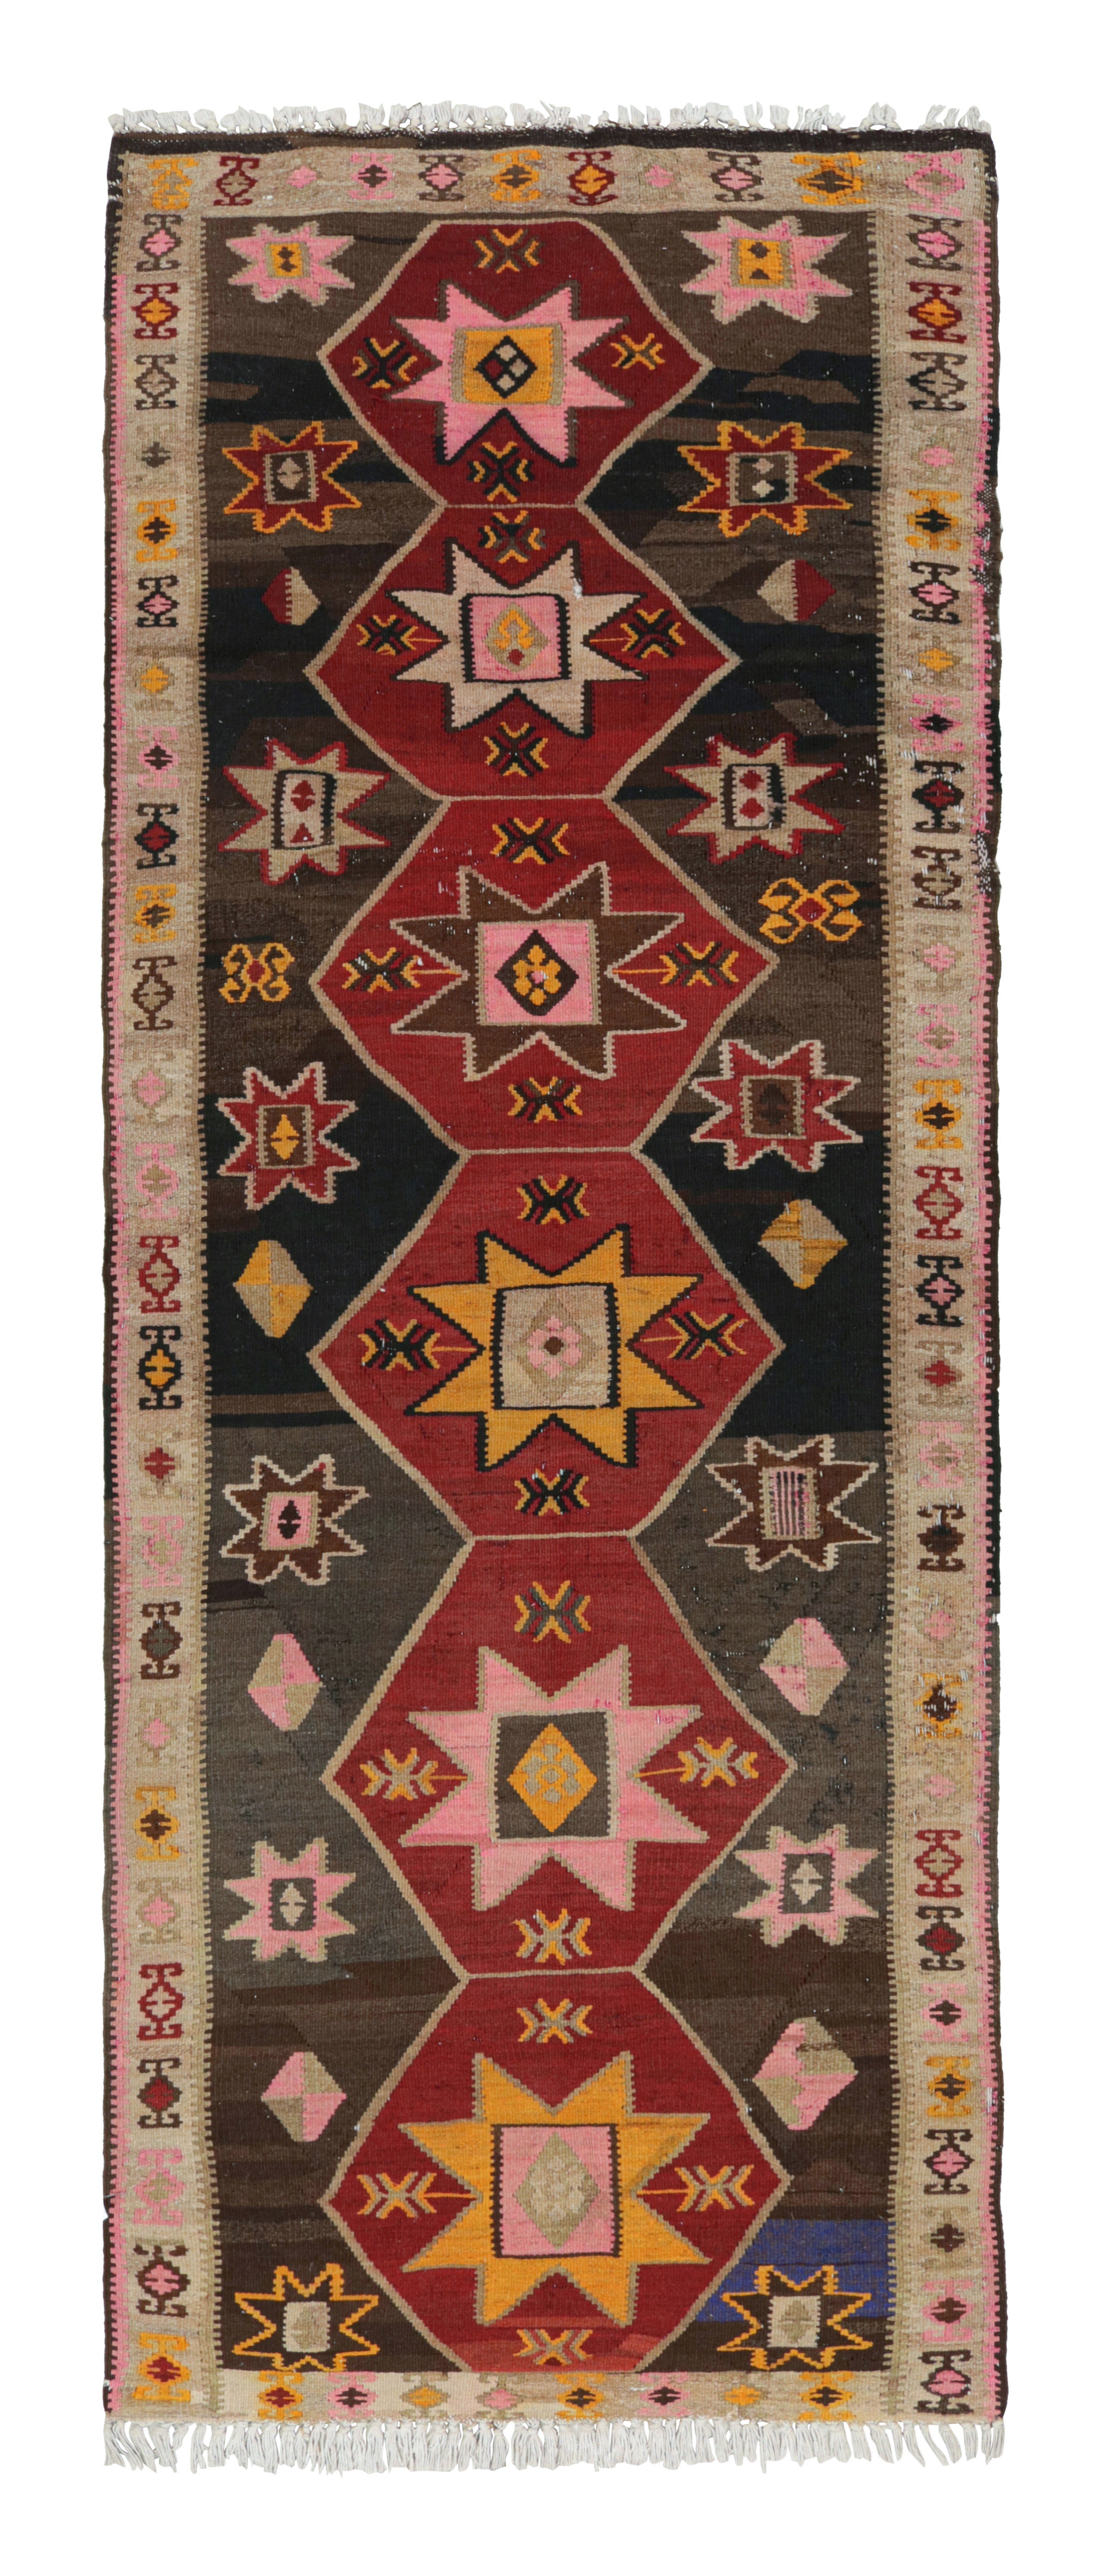 Handgewebter antiker Kelim-Teppich in Beige-Braun-Rot mit Medaillonmuster von Teppich & Kelim